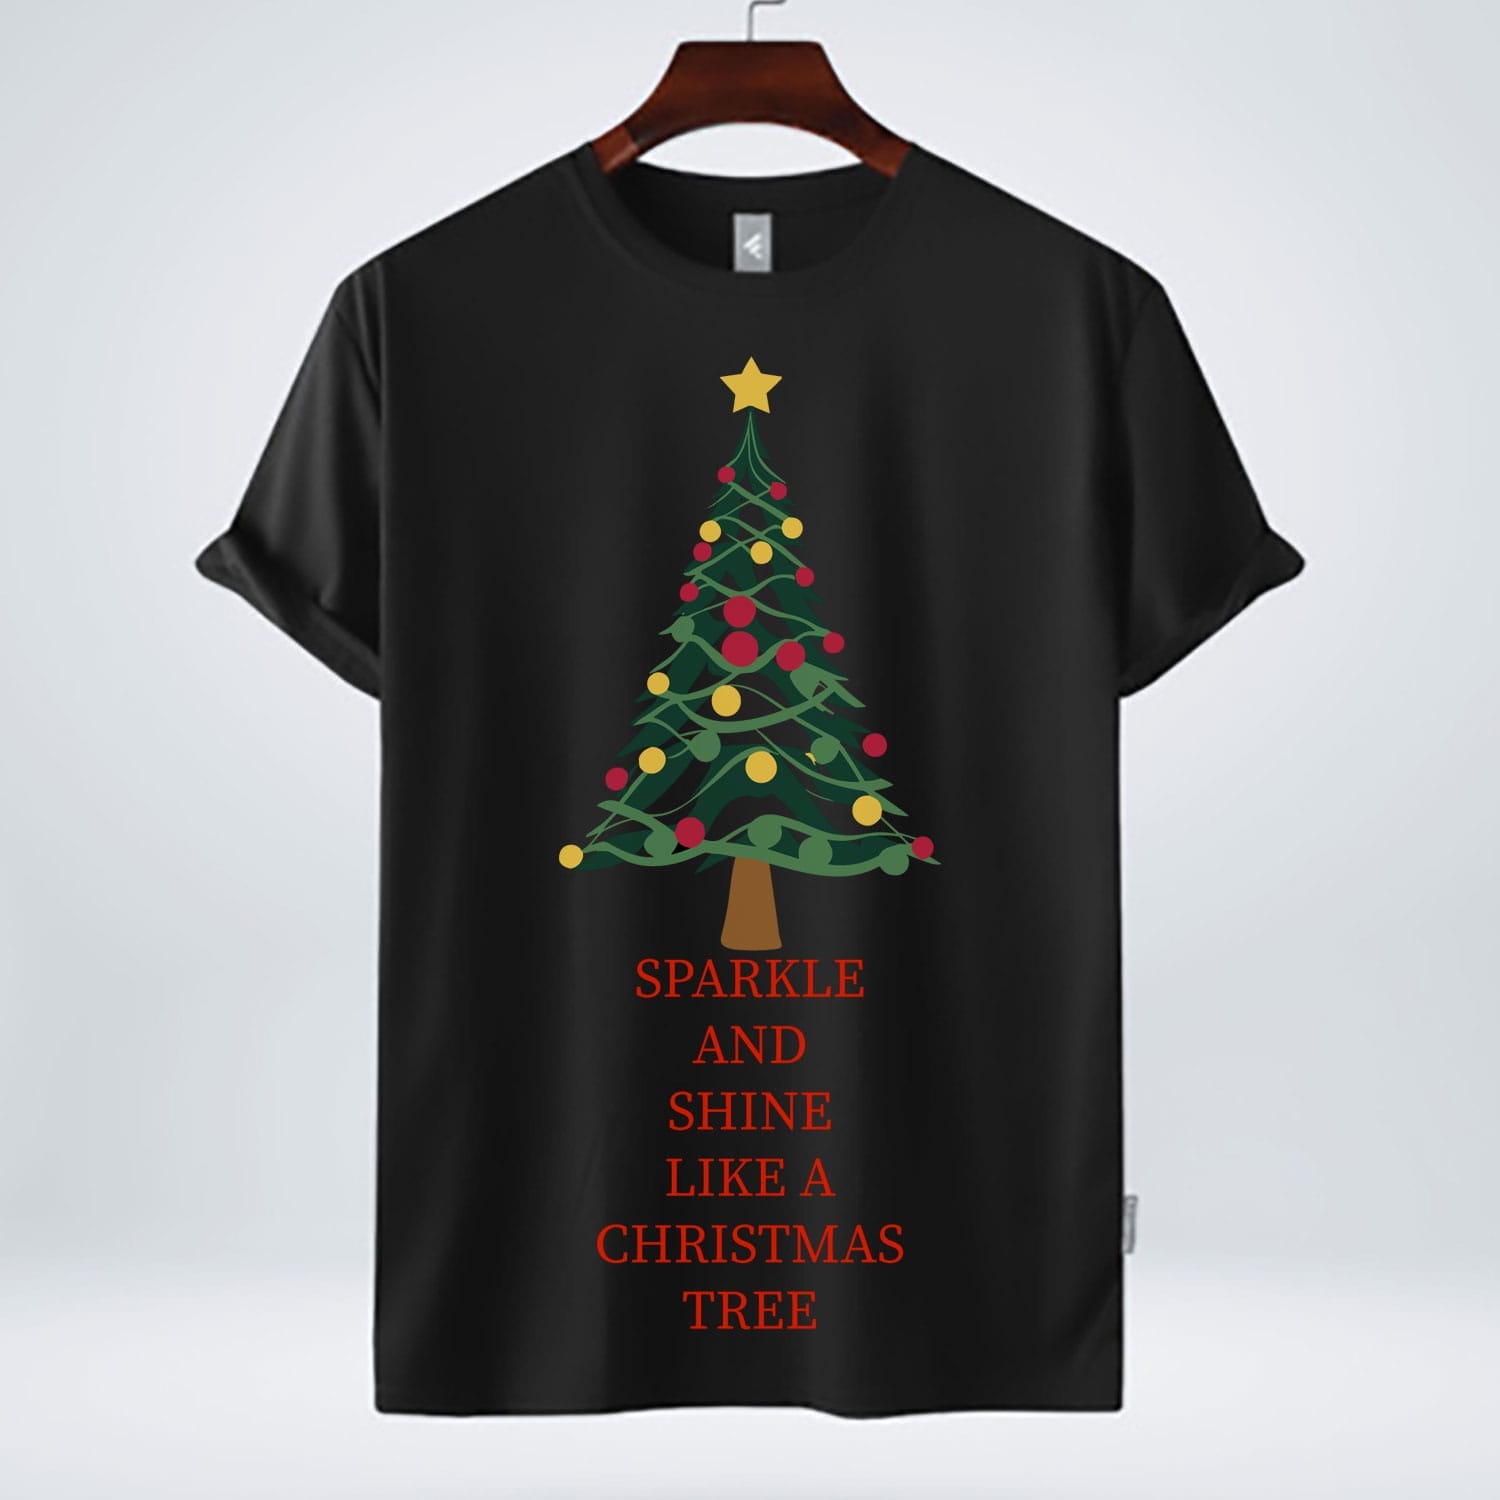 sparkle and shine like a Christmas free t shirt design